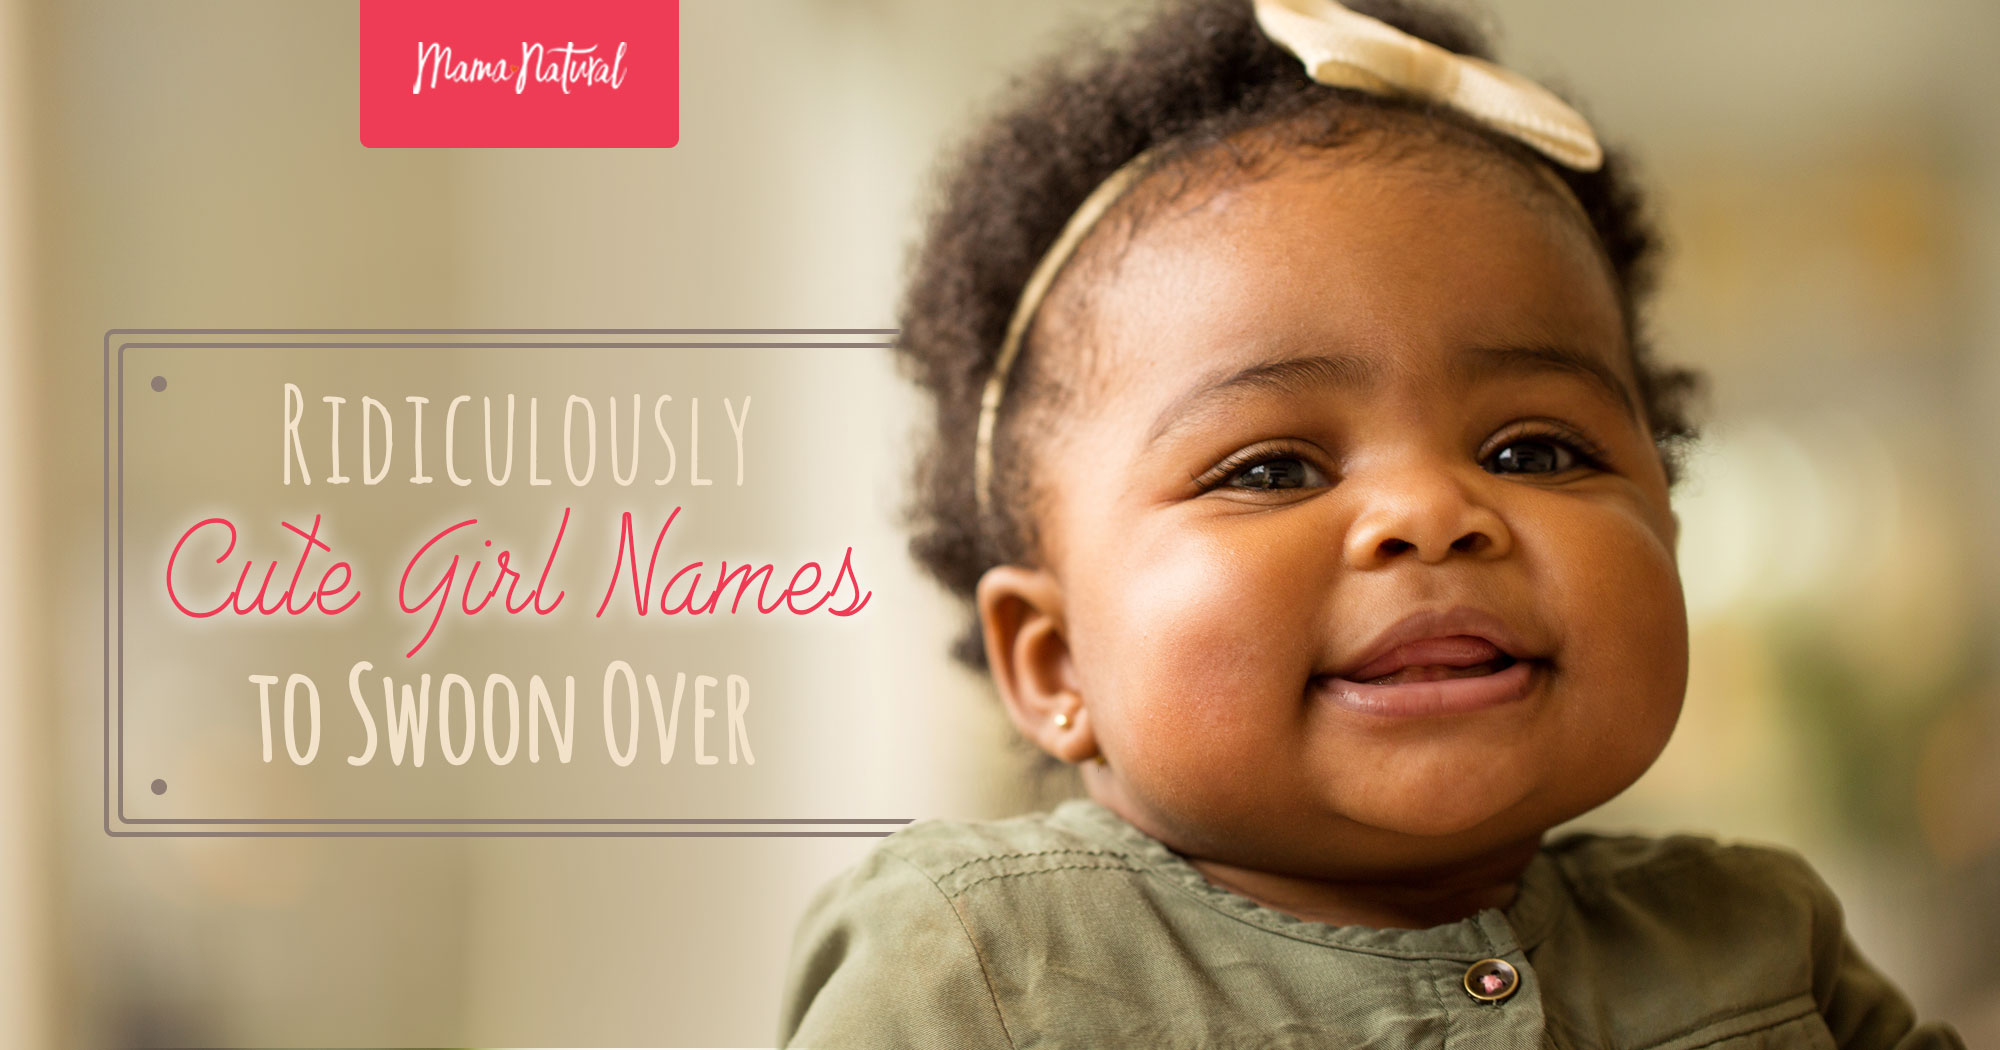 20 Cute Baby Girl Names — Fun Names for Girls